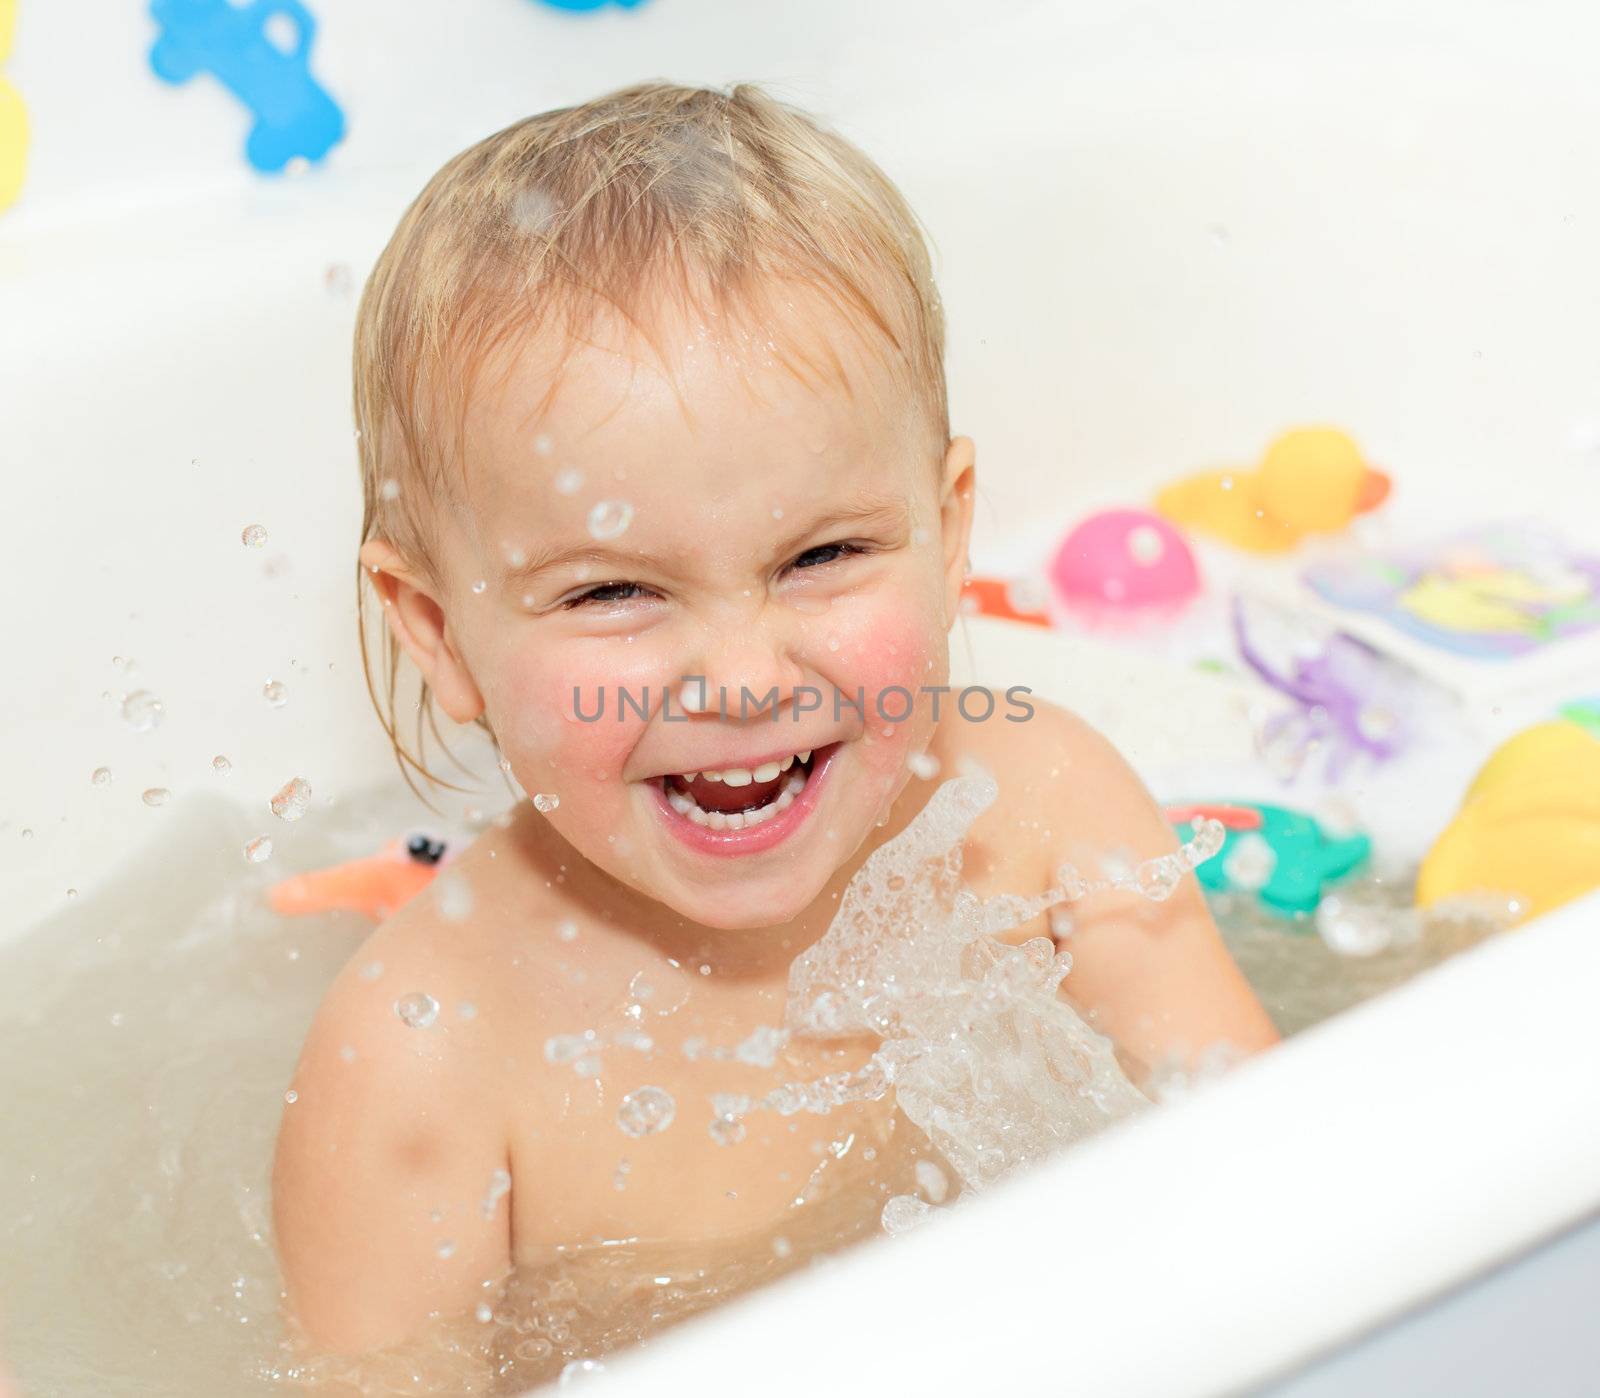 Cute little girl enjoys bathing